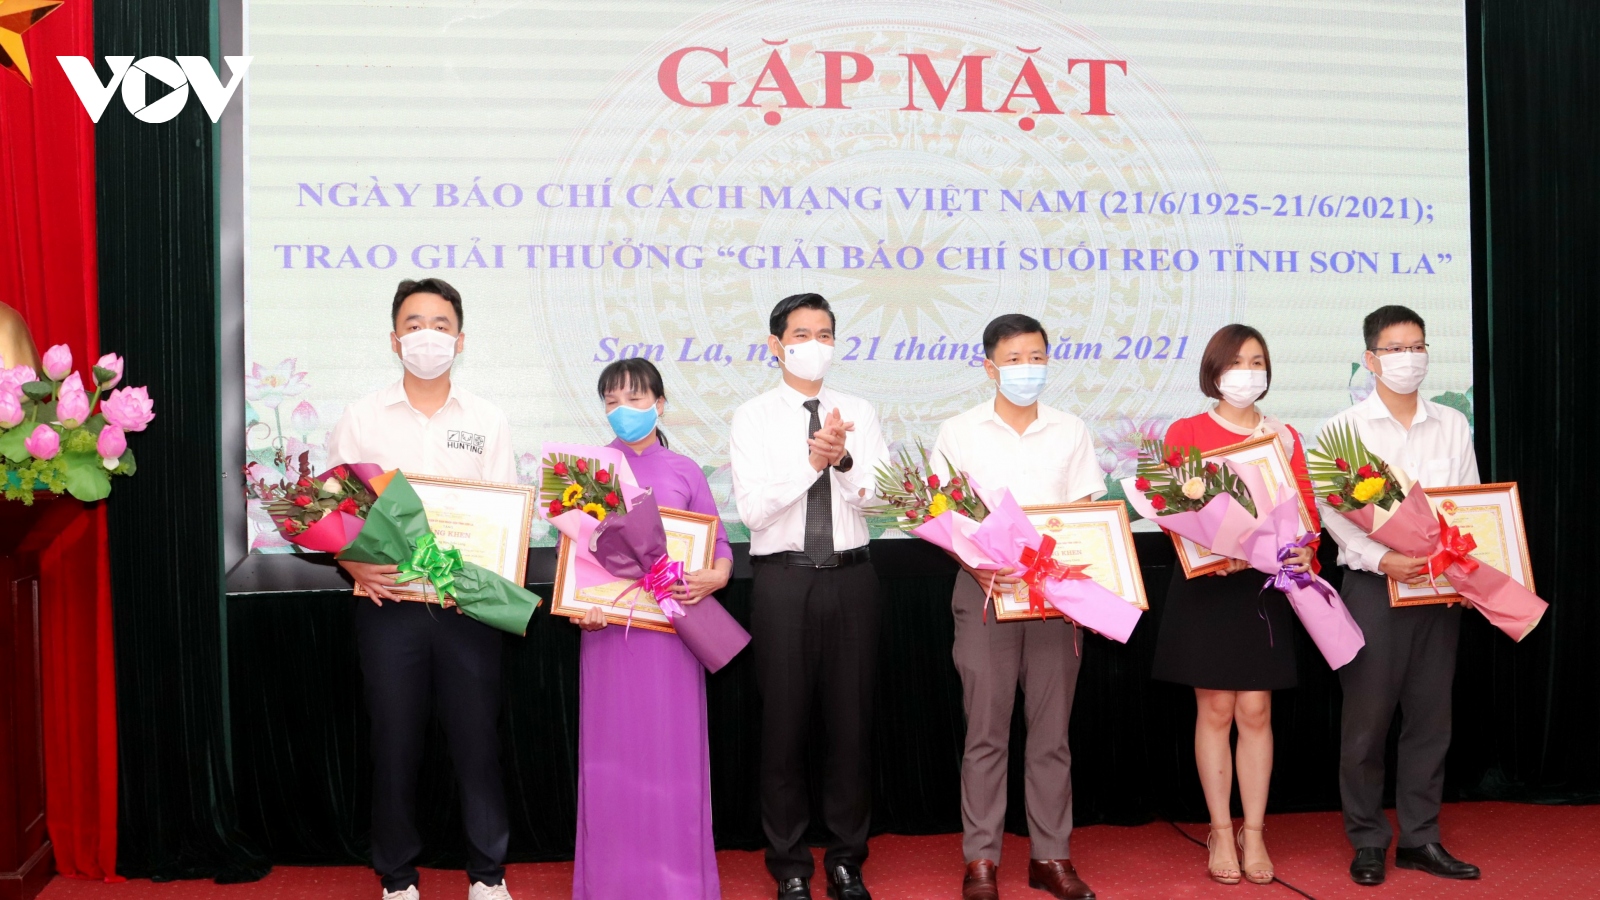 VOV Tây Bắc đạt 12 giải thưởng “Giải báo chí Suối Reo tỉnh Sơn La”